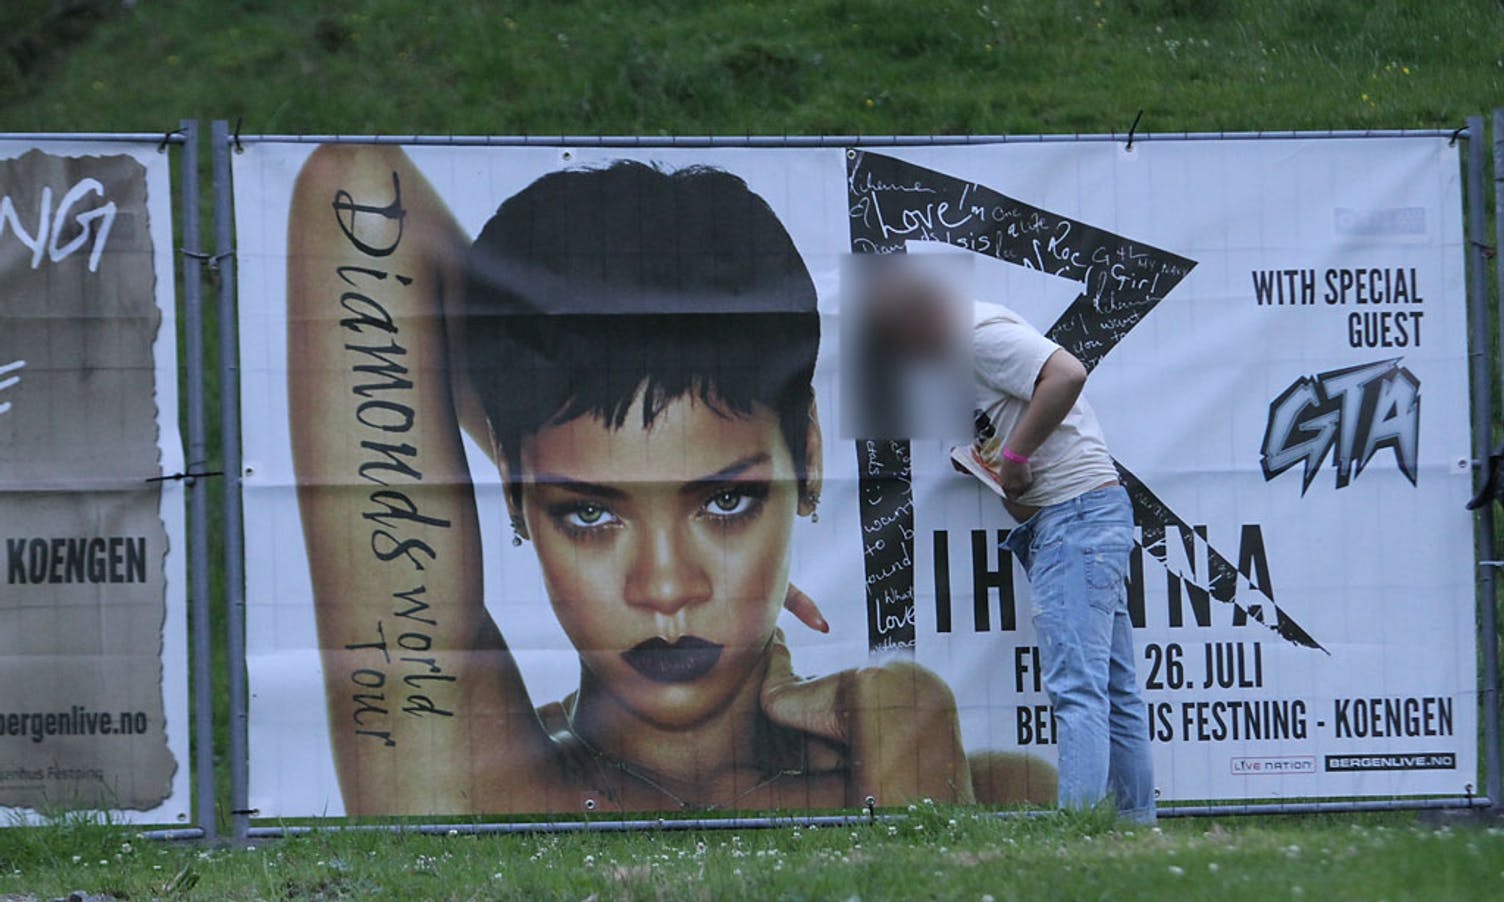 Det nærmaste du kan koma Rihanna med smekken nede? (Foto: KVB)